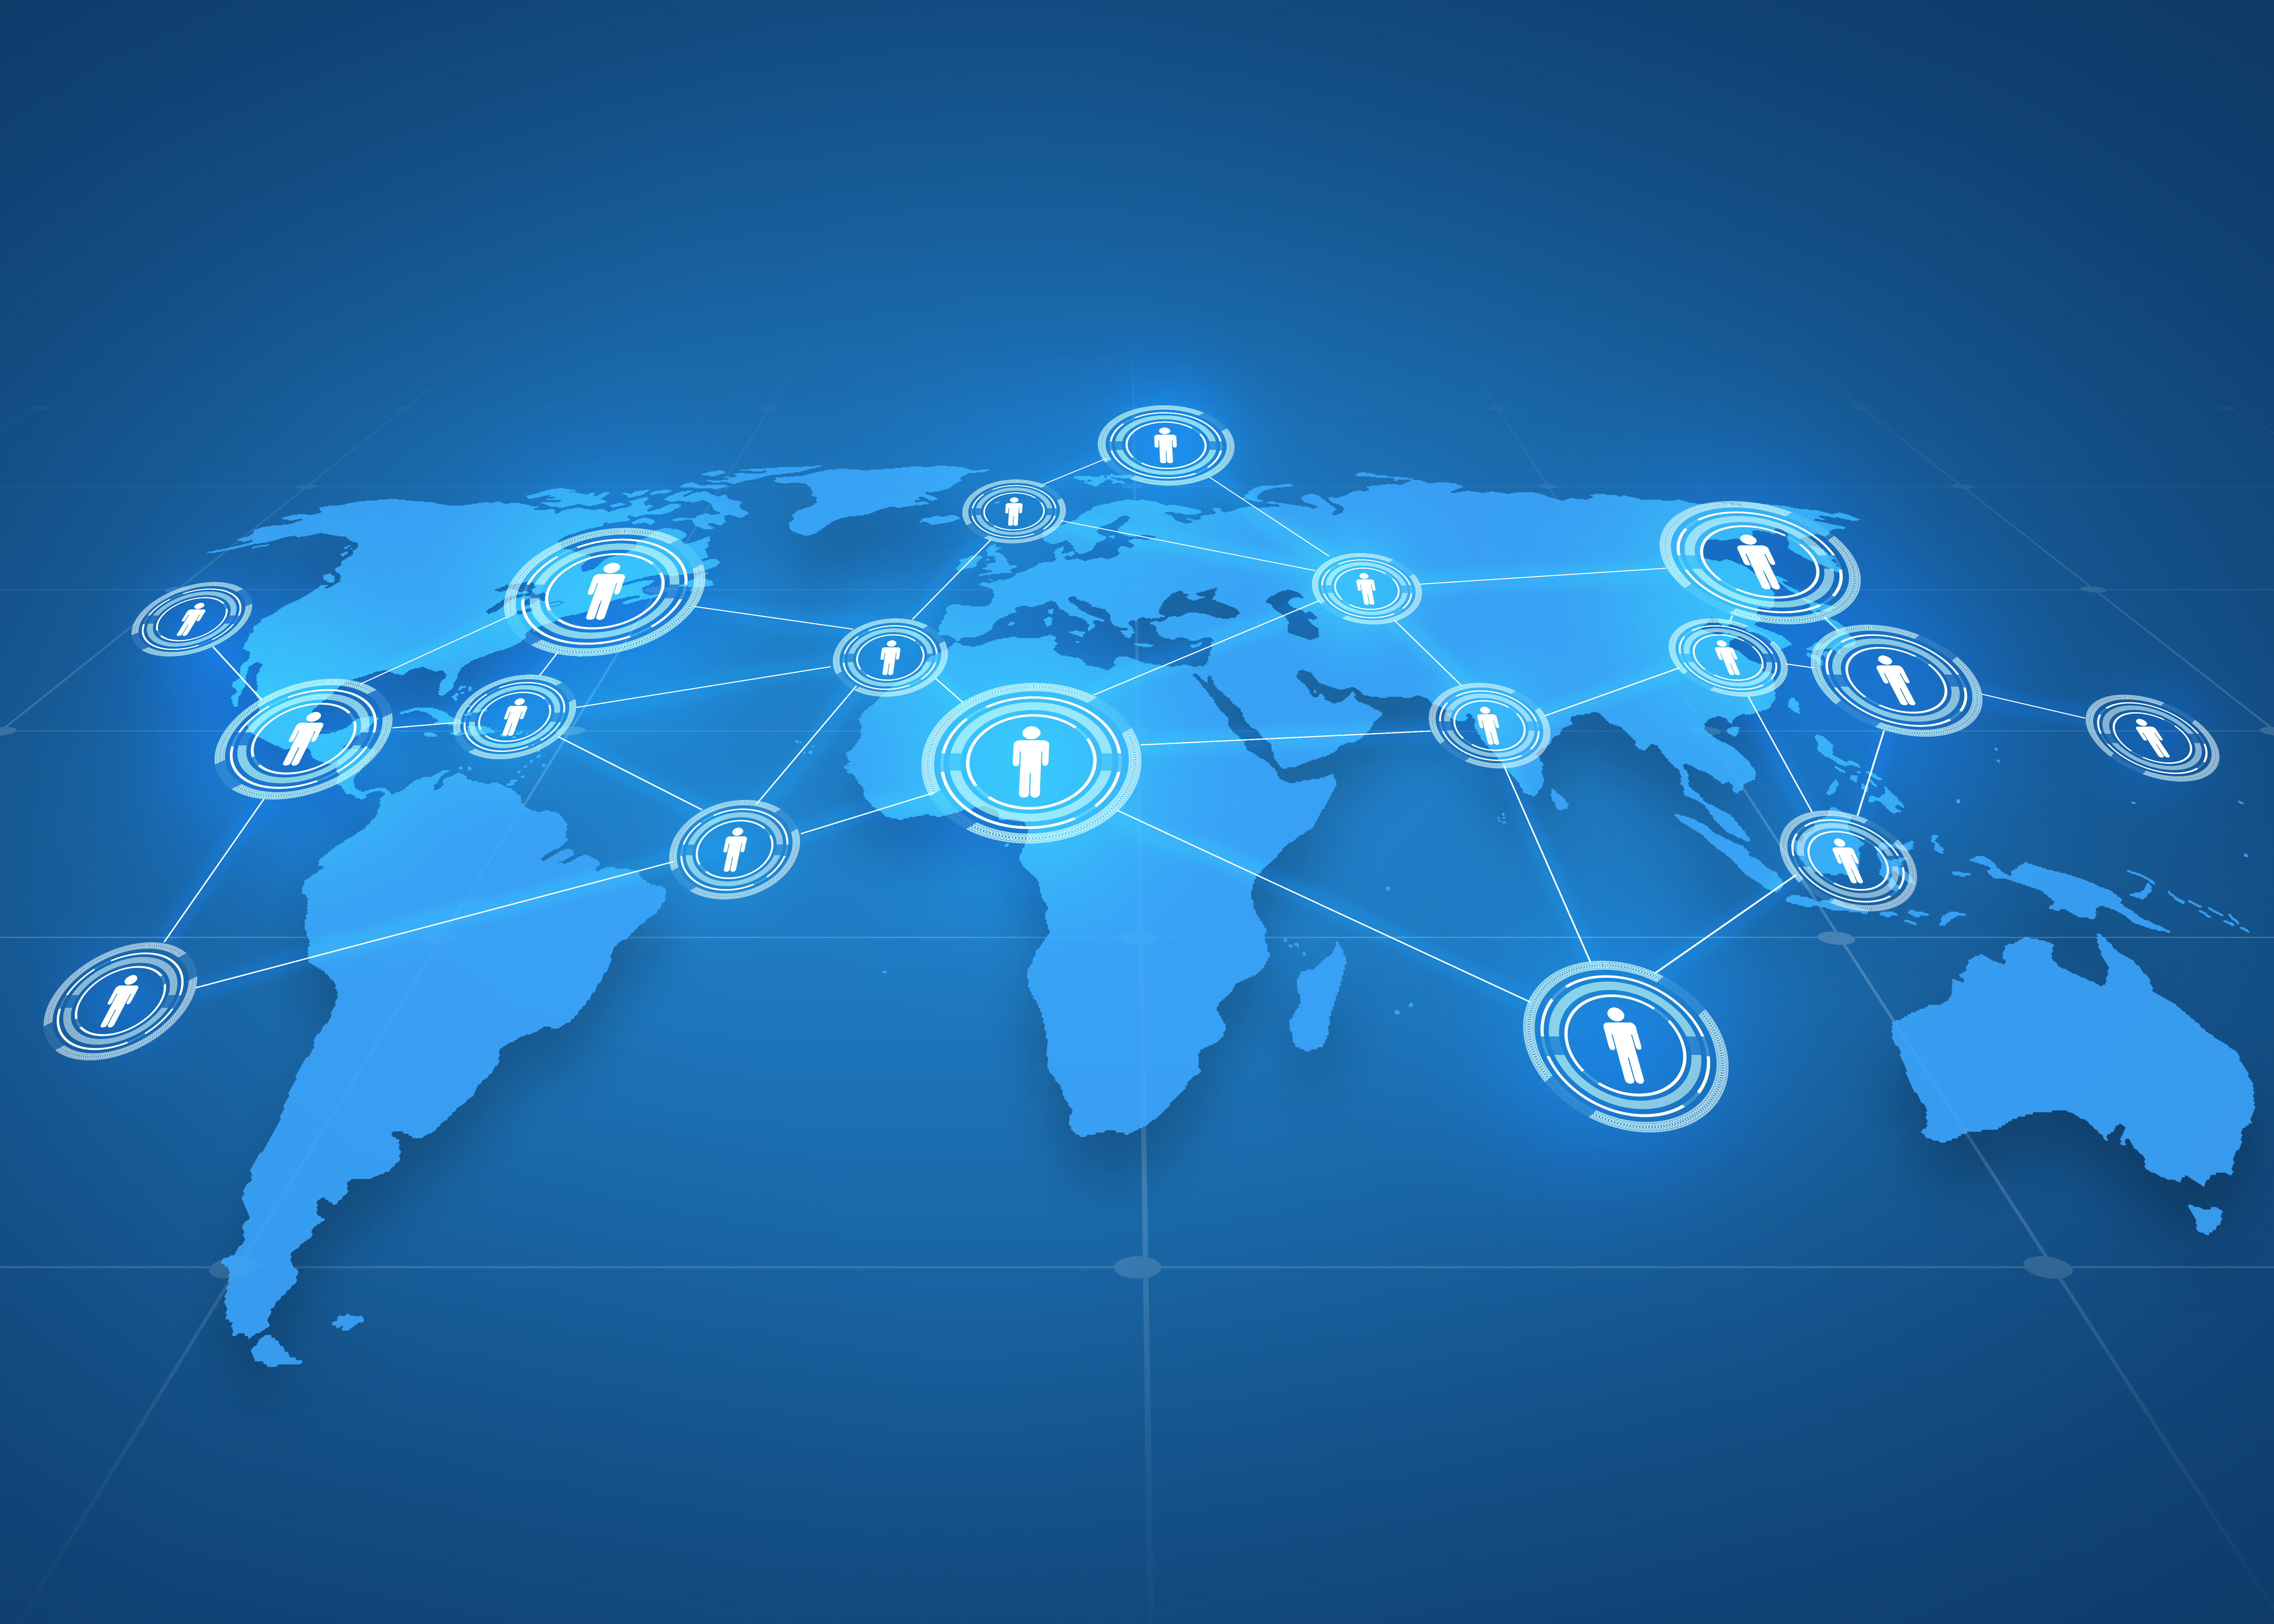 globālā biznesa, sociālo tīklu, masu mediju un tehnoloģiju koncepcija — pasaules kartes projekcija ar cilvēku ikonām virs zila fona